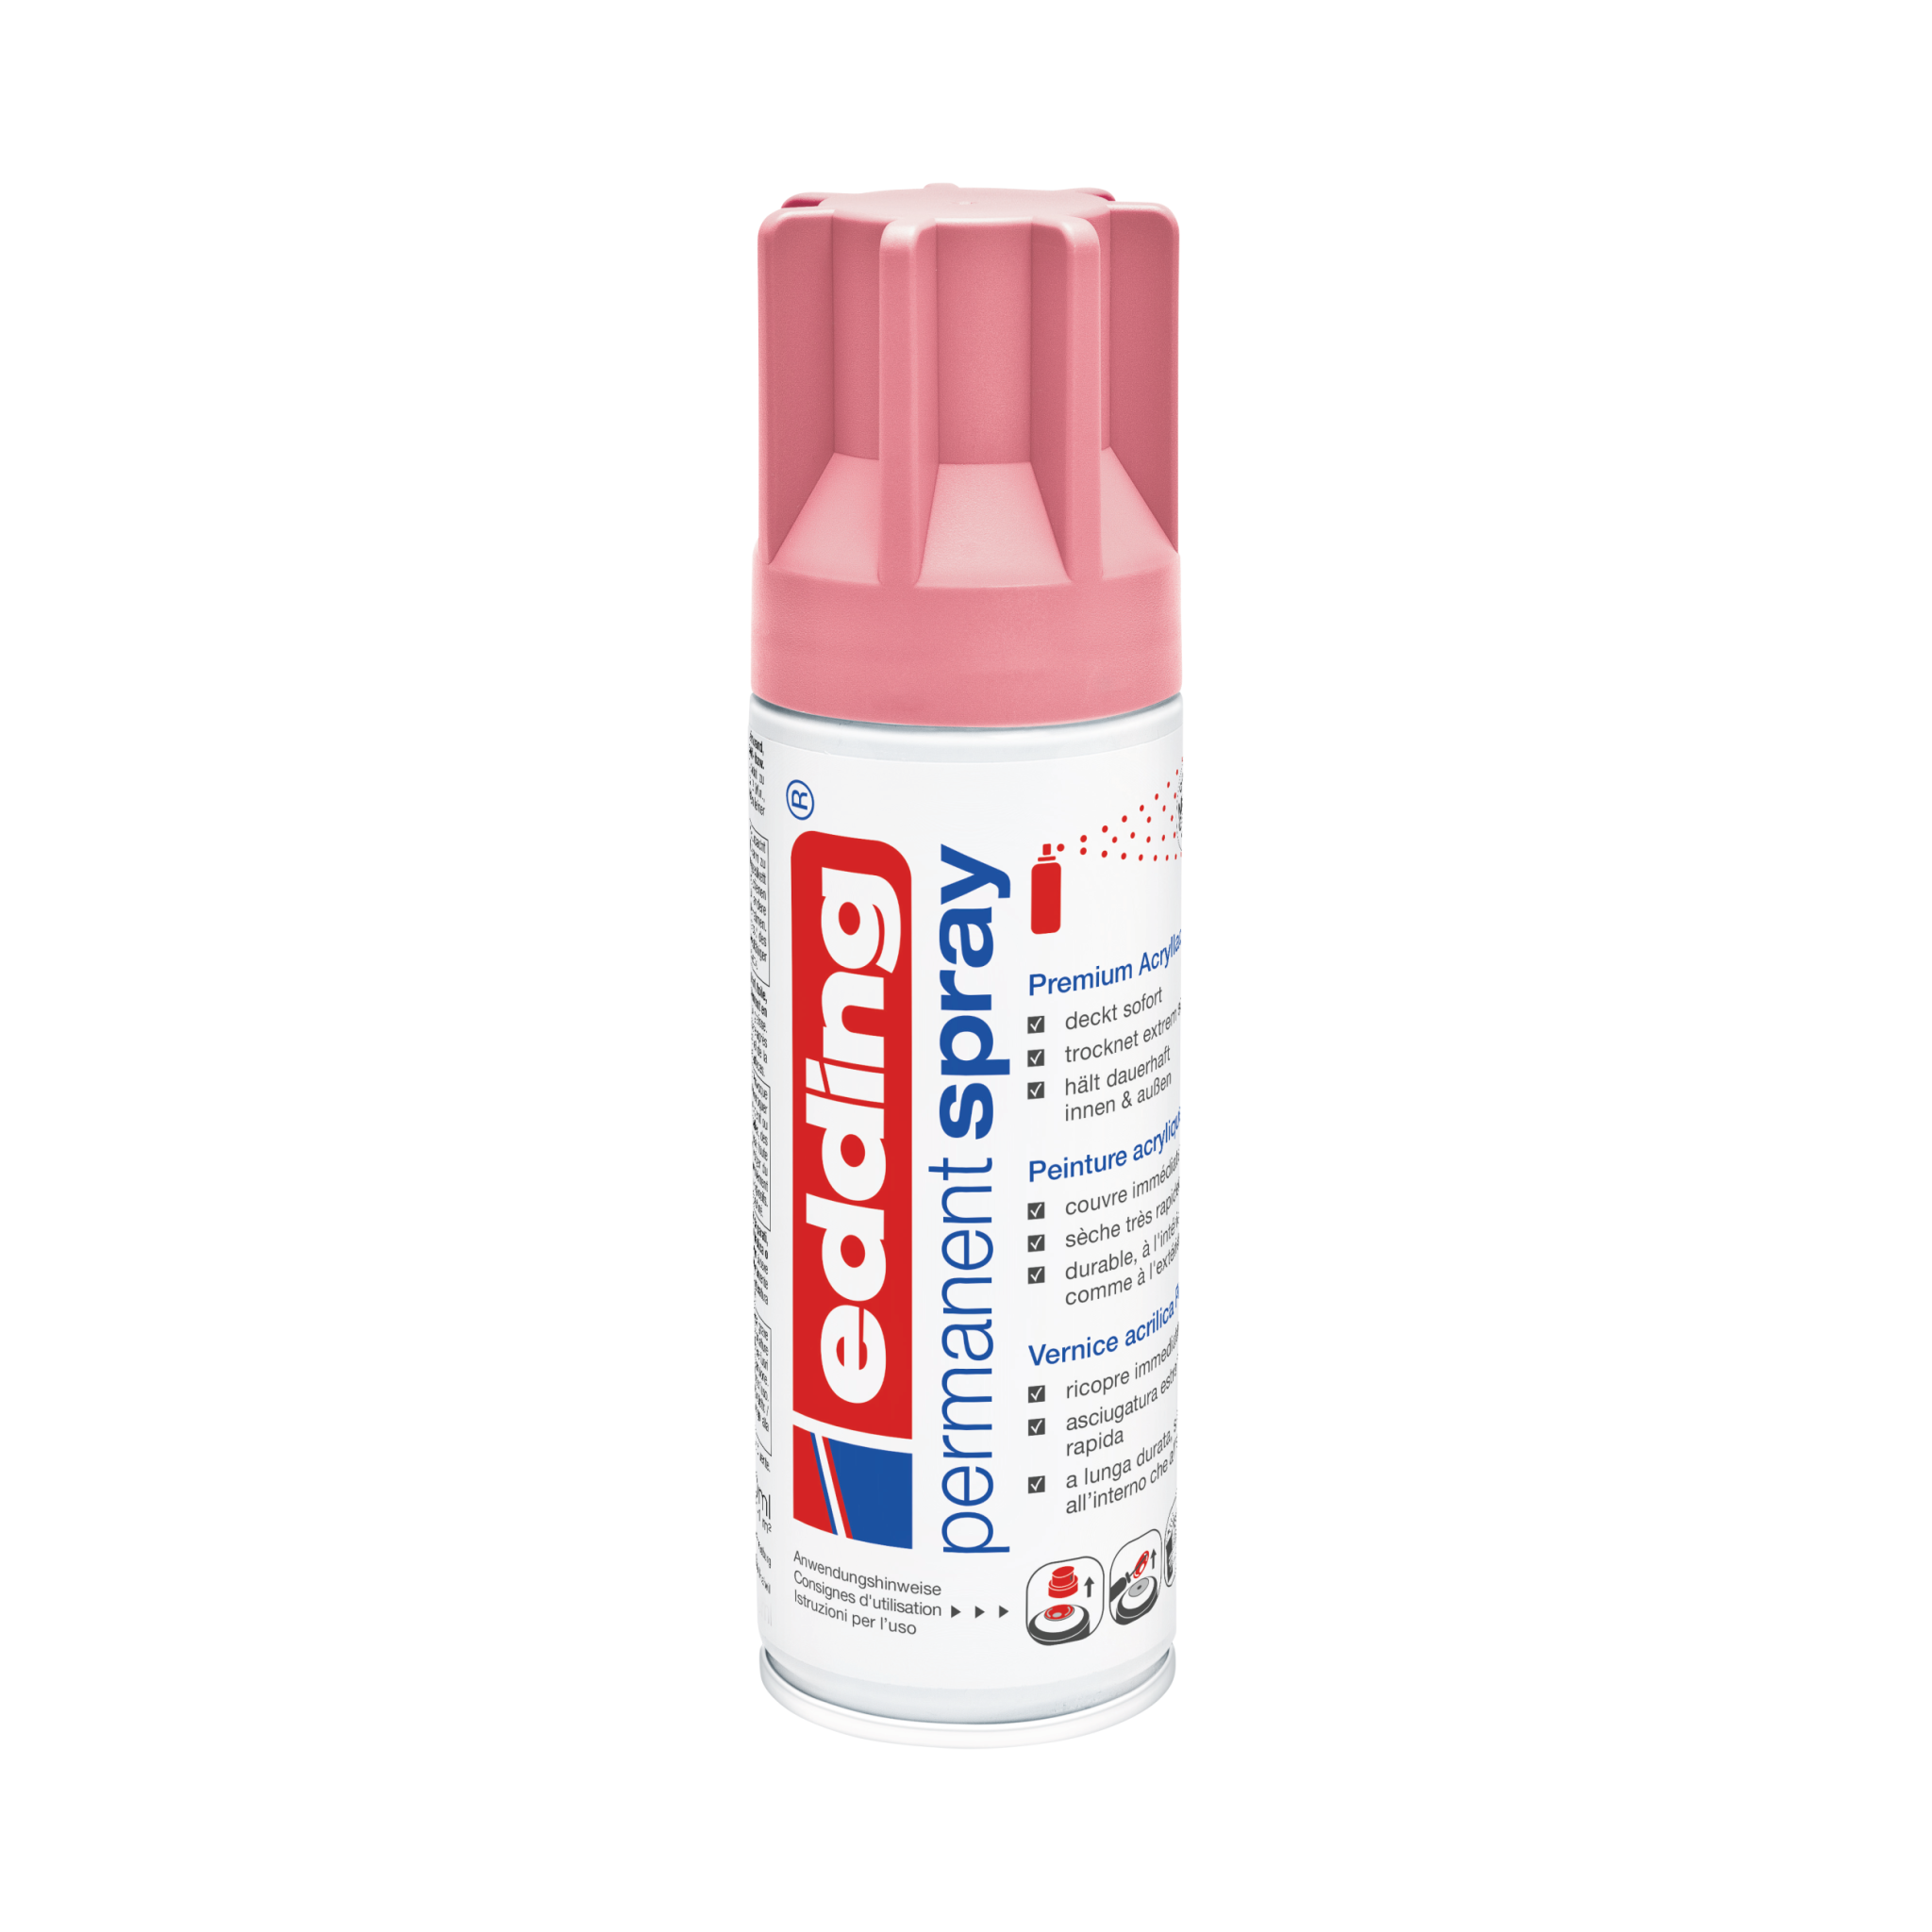 Eine Dose edding 5200 Permanentspray Acryllack in leuchtendem Pink mit mehrsprachiger Beschriftung, die auf die Premium-Qualitätsmerkmale für Mal- und Heimwerkerprojekte hinweist.